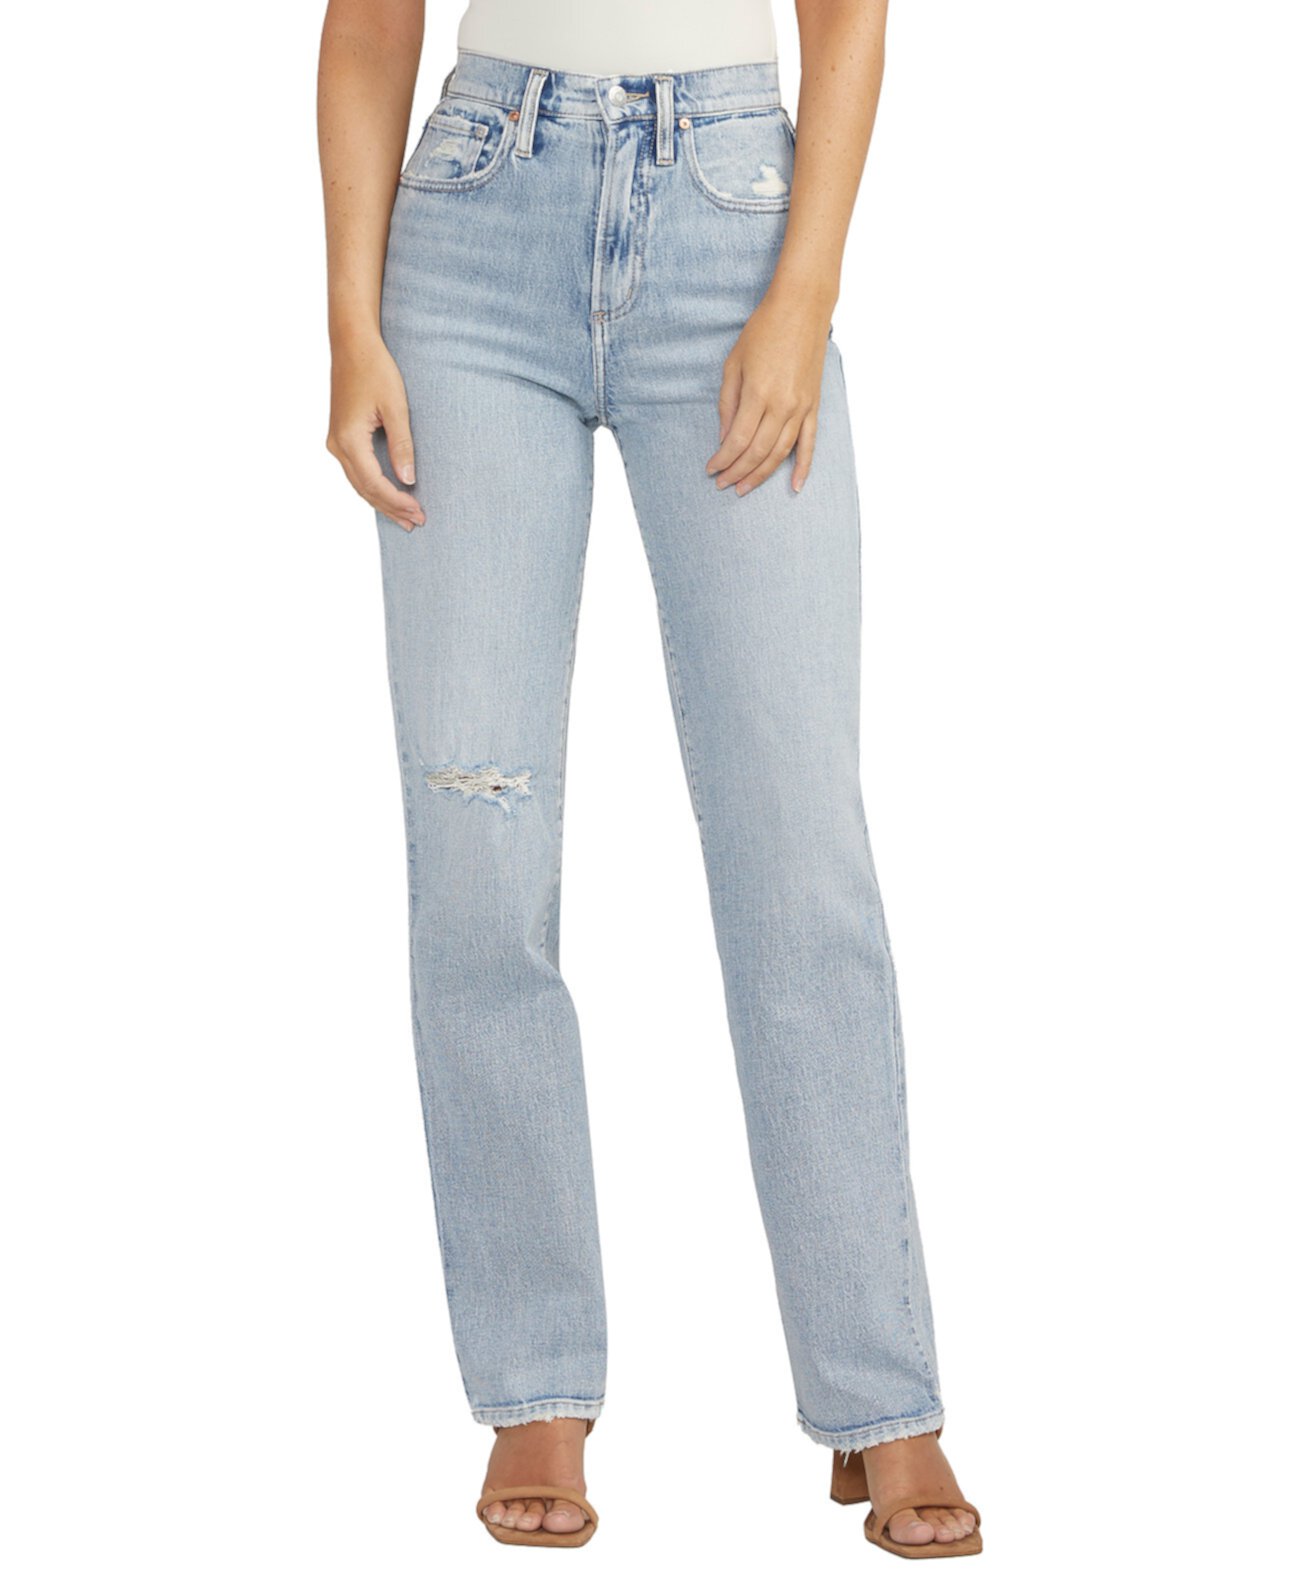 Женские прямые джинсы с высокой посадкой и очень желательной посадкой Silver Jeans Co.